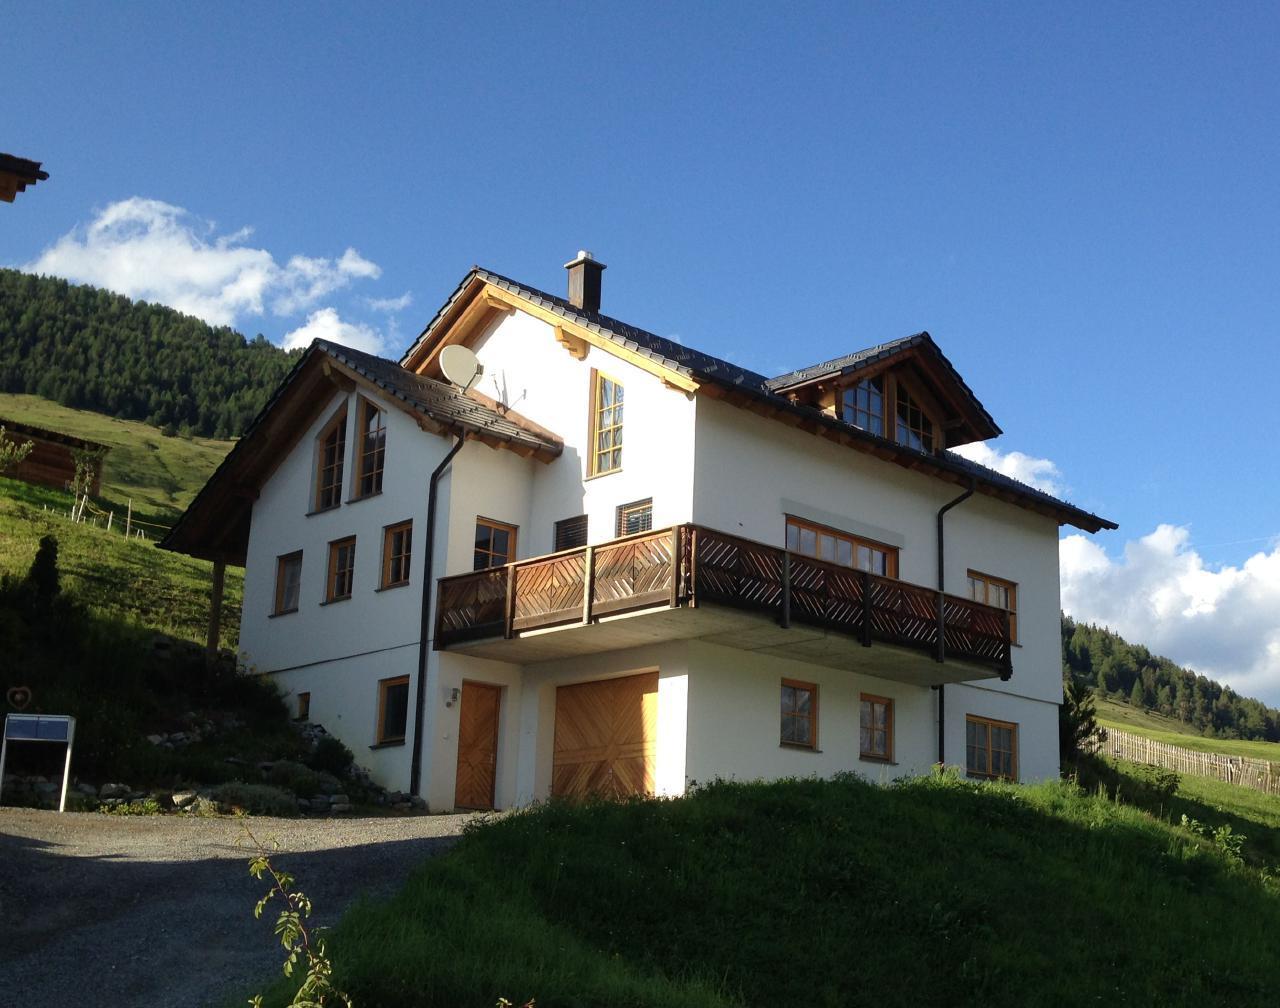 Chasa Minella Ferienhaus in der Schweiz